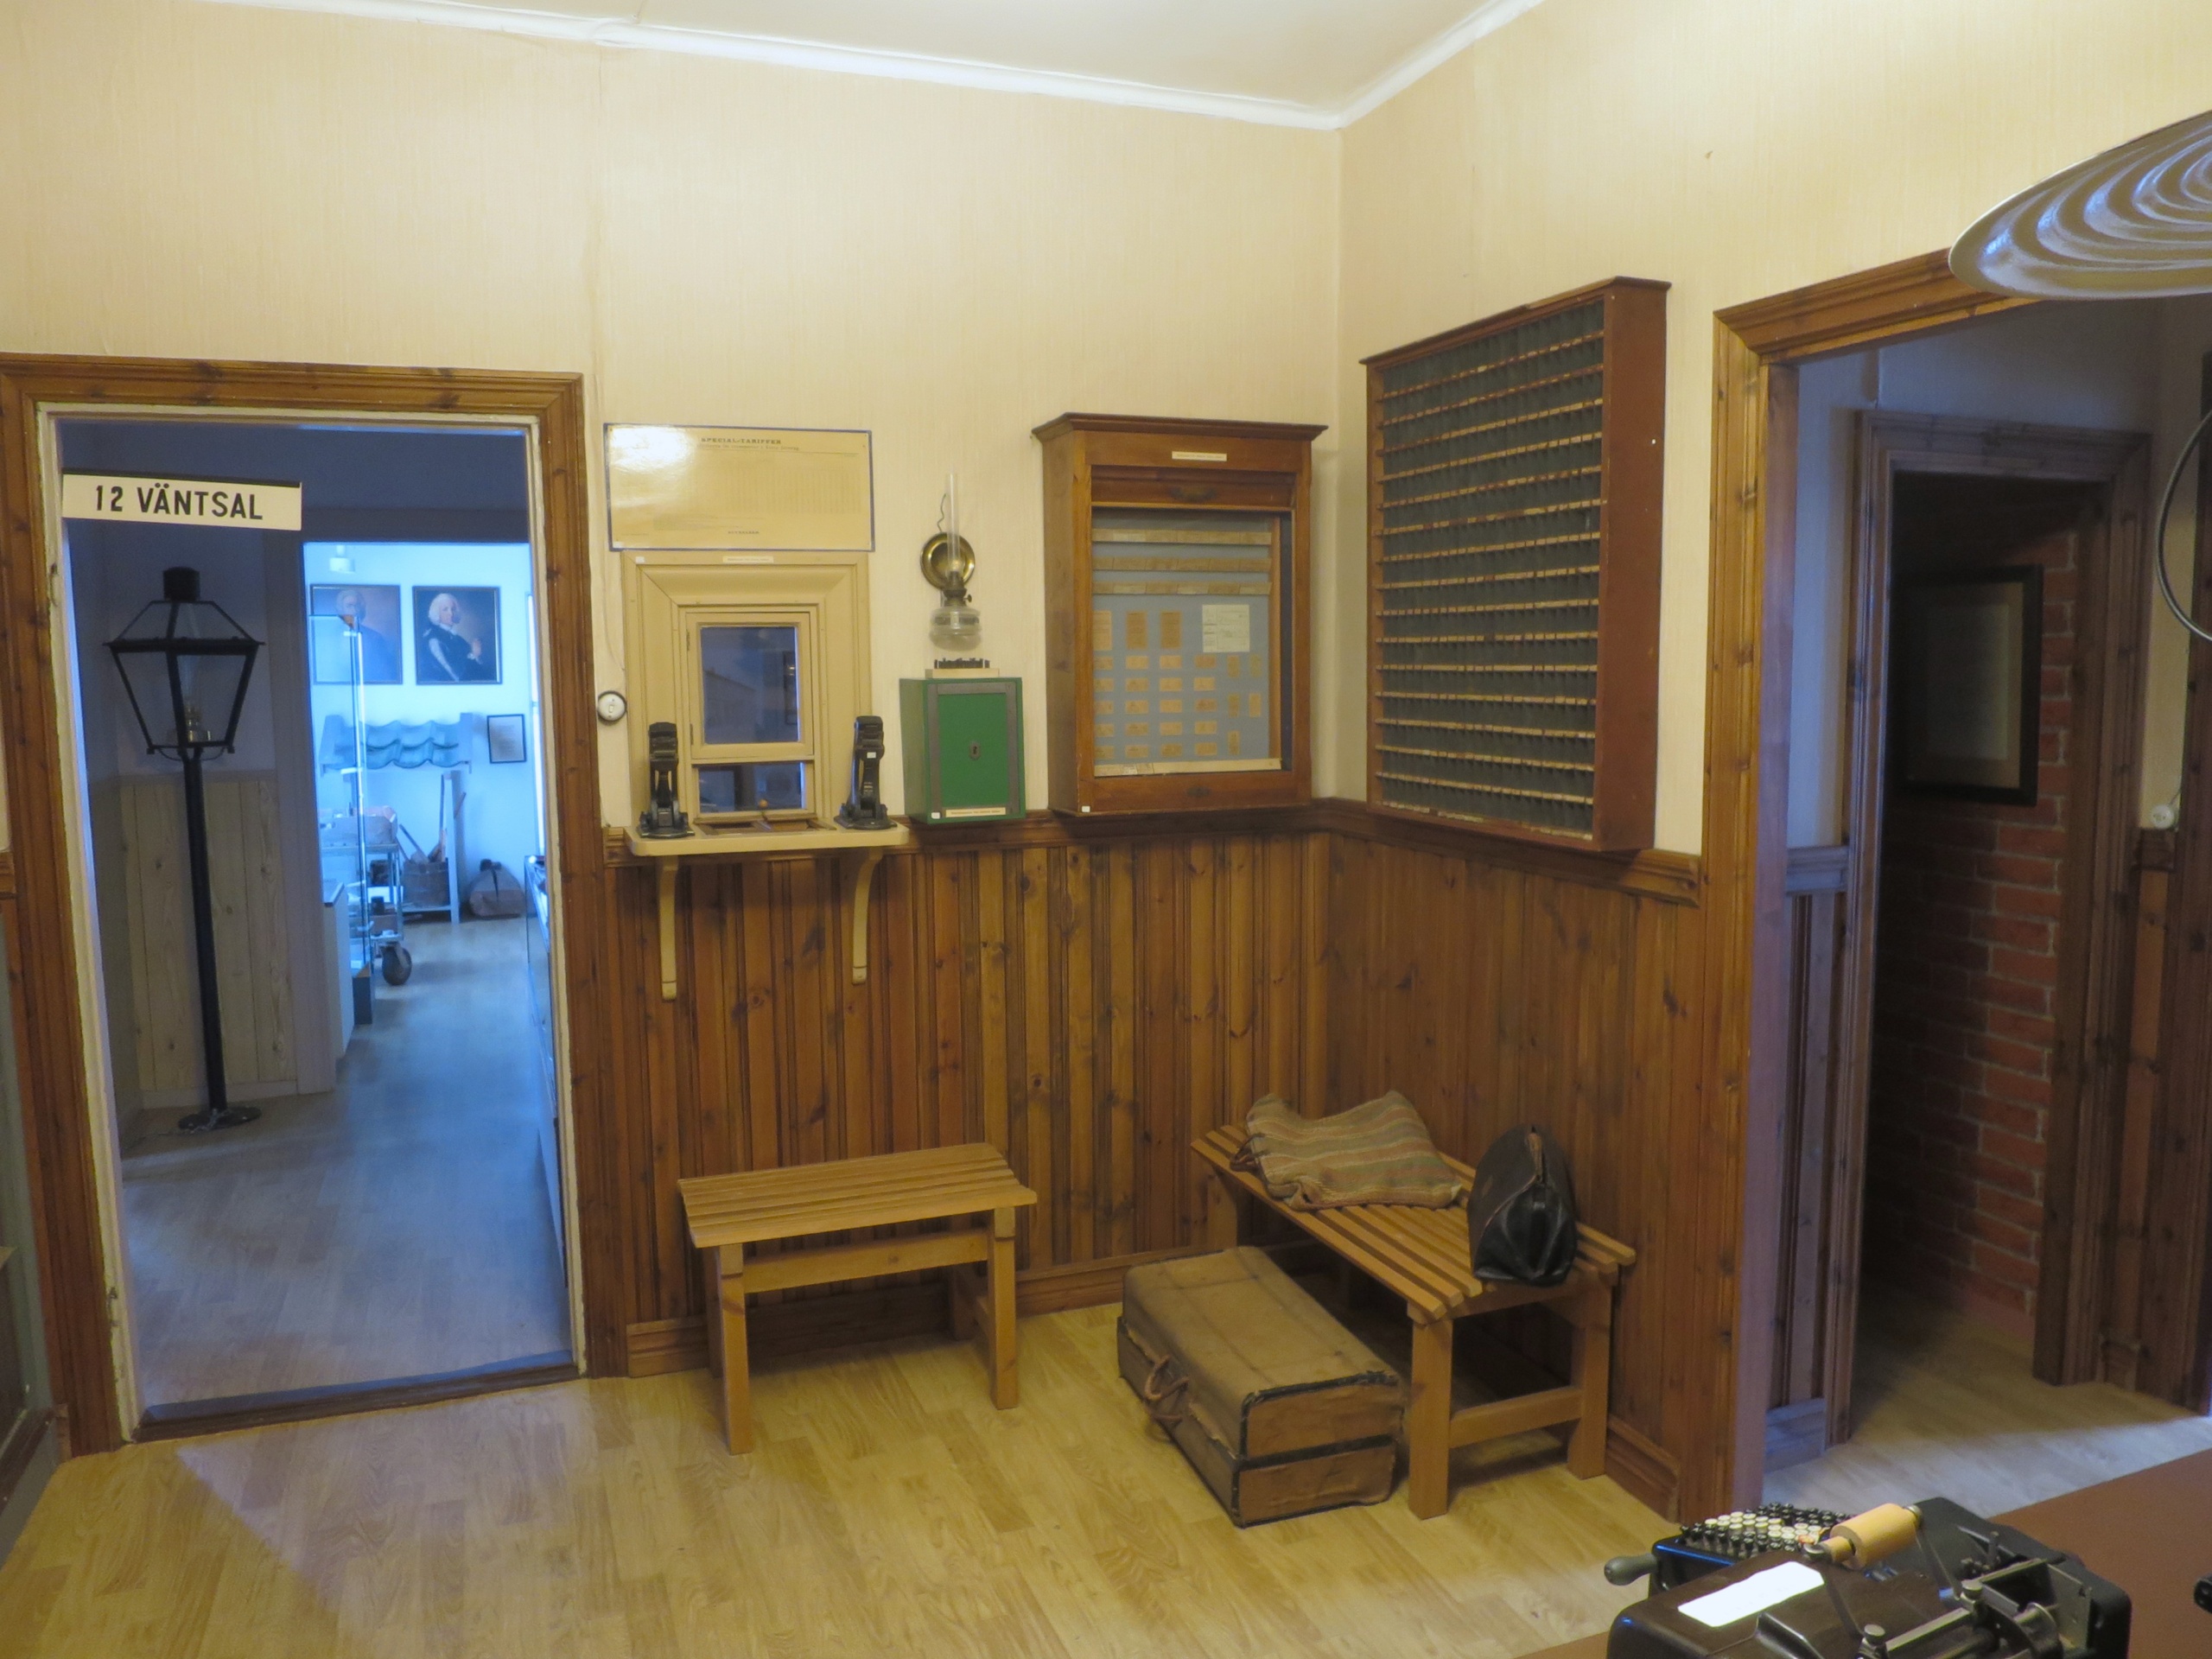 Objetos históricos que muestran cómo era la sala de espera de una estación de tren. Esto se puede encontrar en el Museo Gamla Kosta, que se encuentra en el Reino del Vidrio.